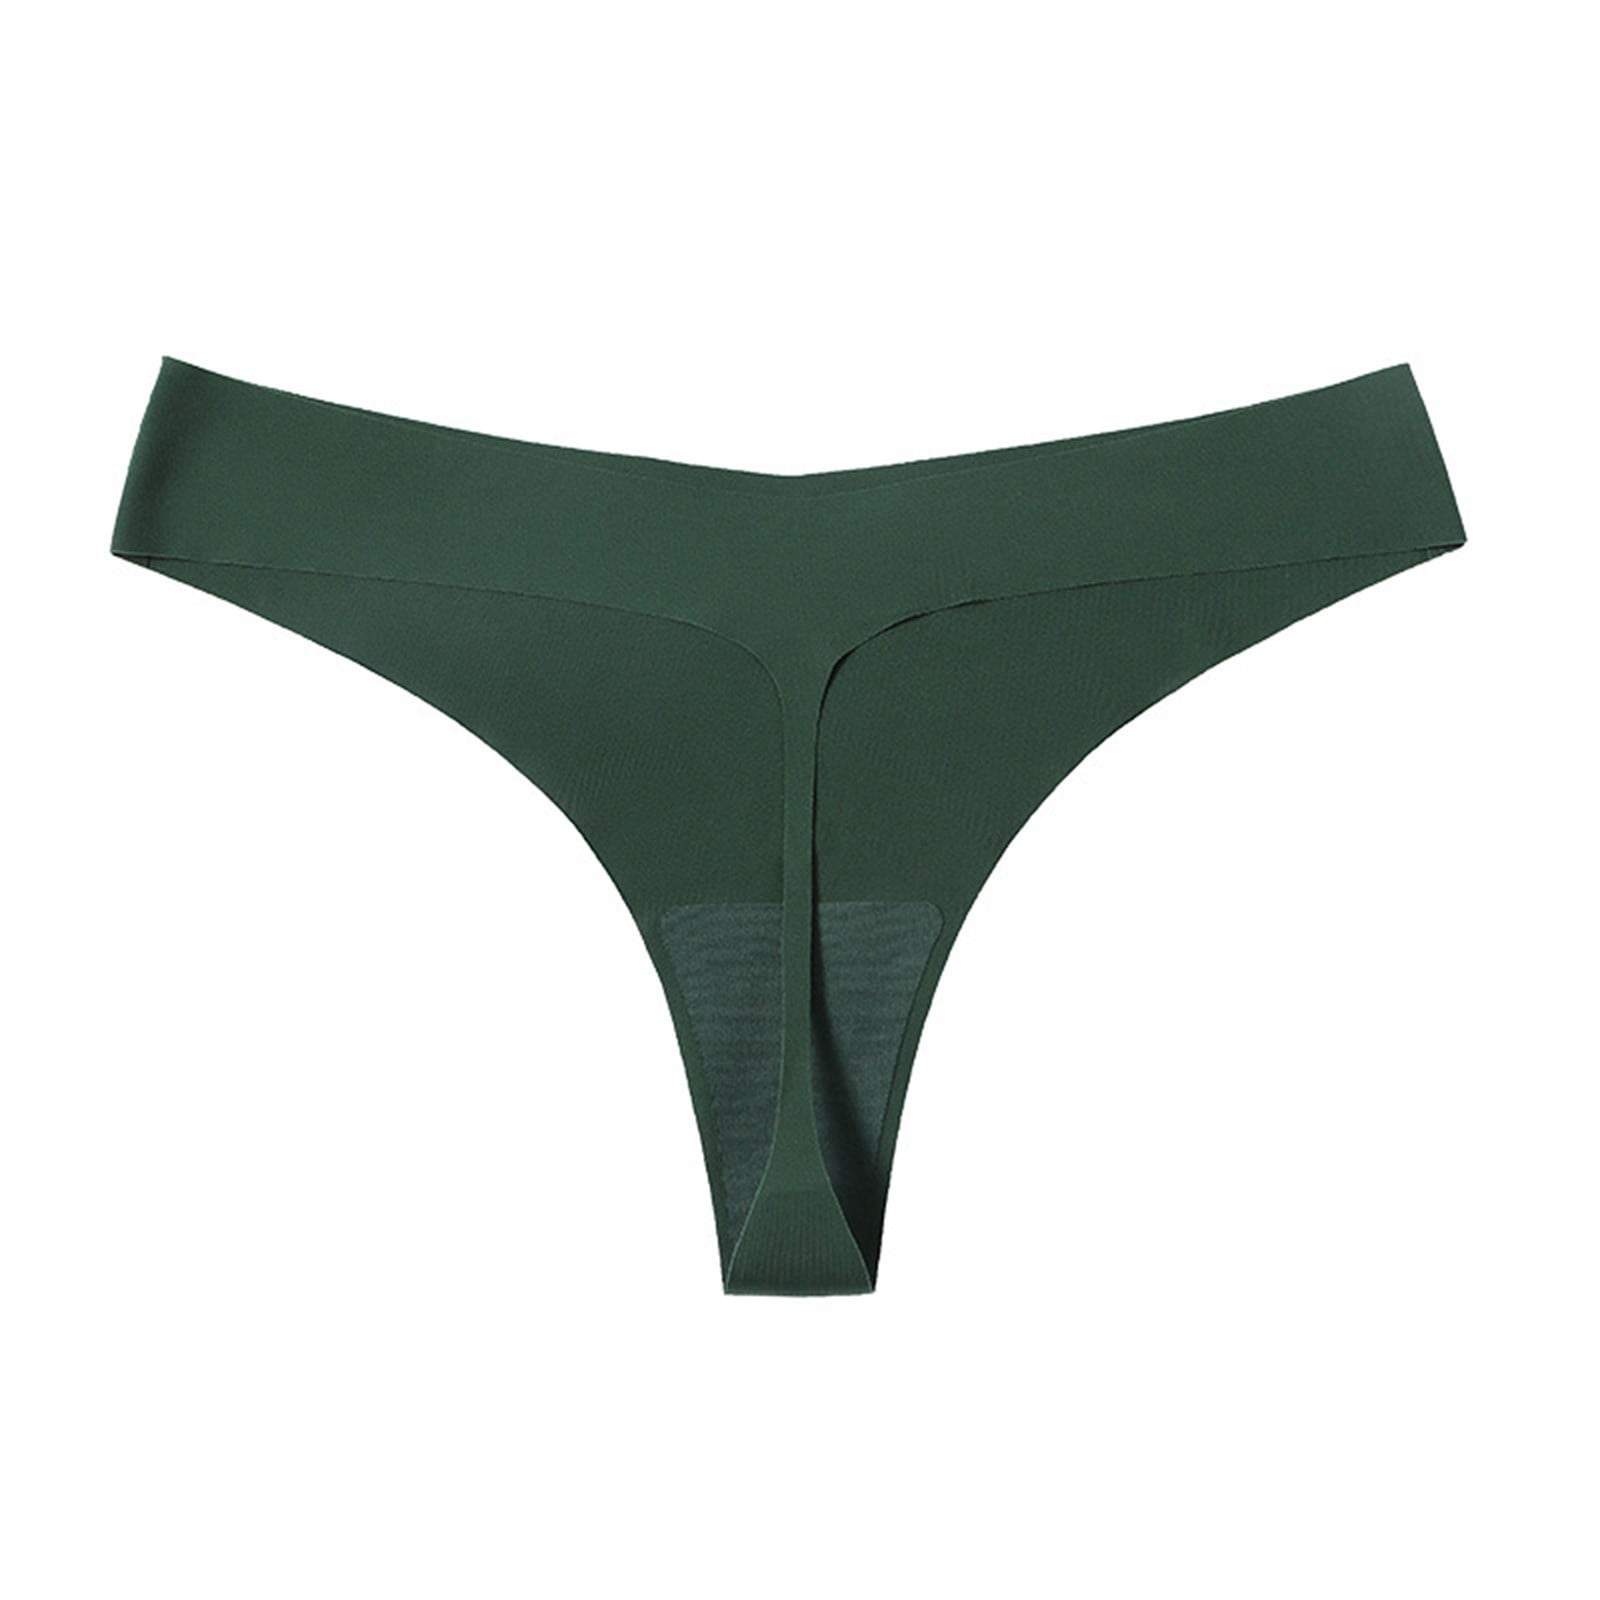 Lingerie Sets for Women Hot Girls Low Waist Panty Underwear Bikini Seamless  Thongs Underwear Solid Nylon Ice Silk 